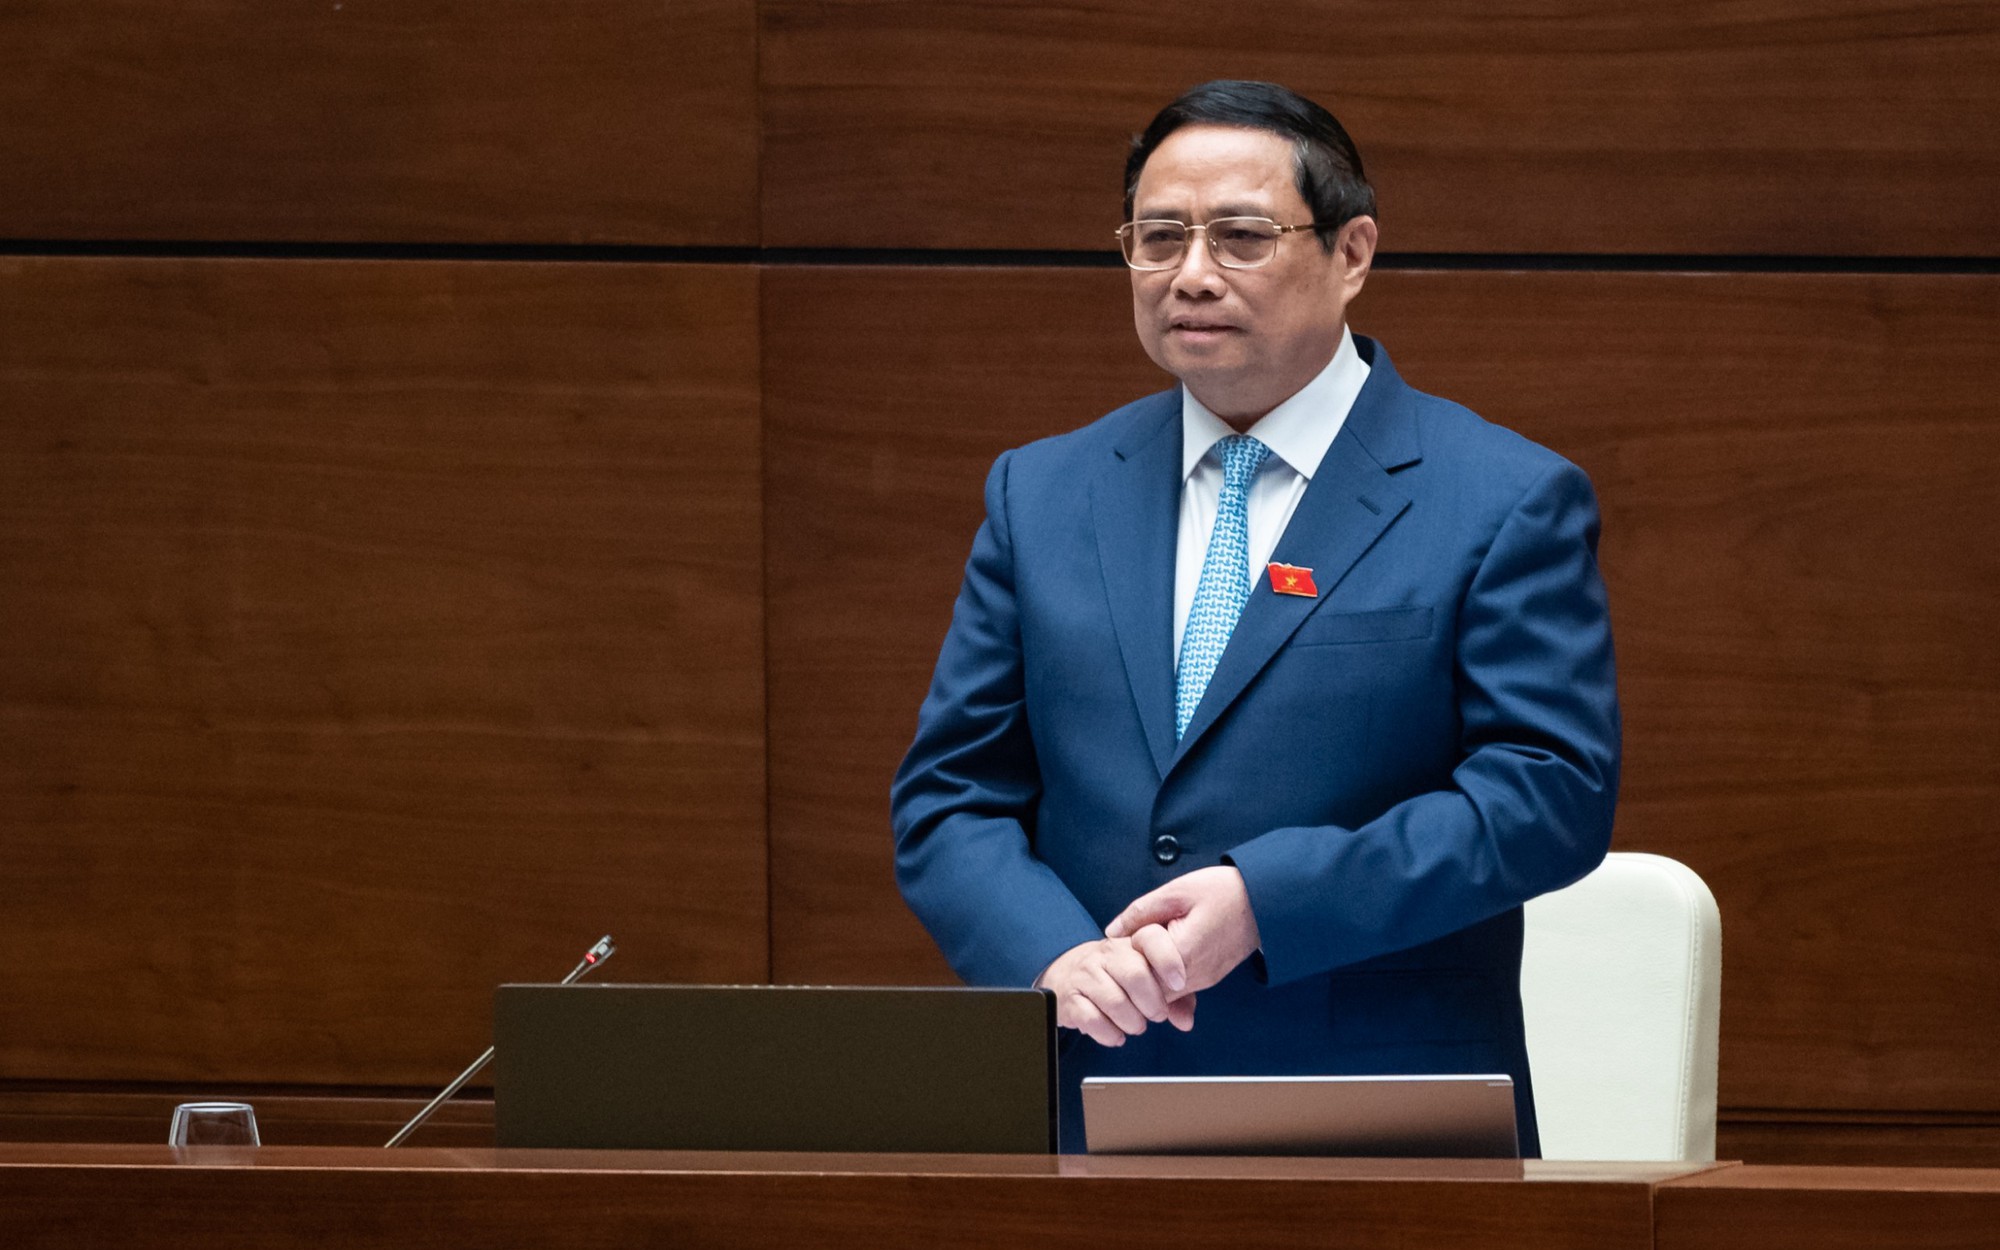 Thủ tướng Phạm Minh Chính: Chúng tôi nhận khuyết điểm việc chưa hoàn thành Nghị quyết Trung ương giao